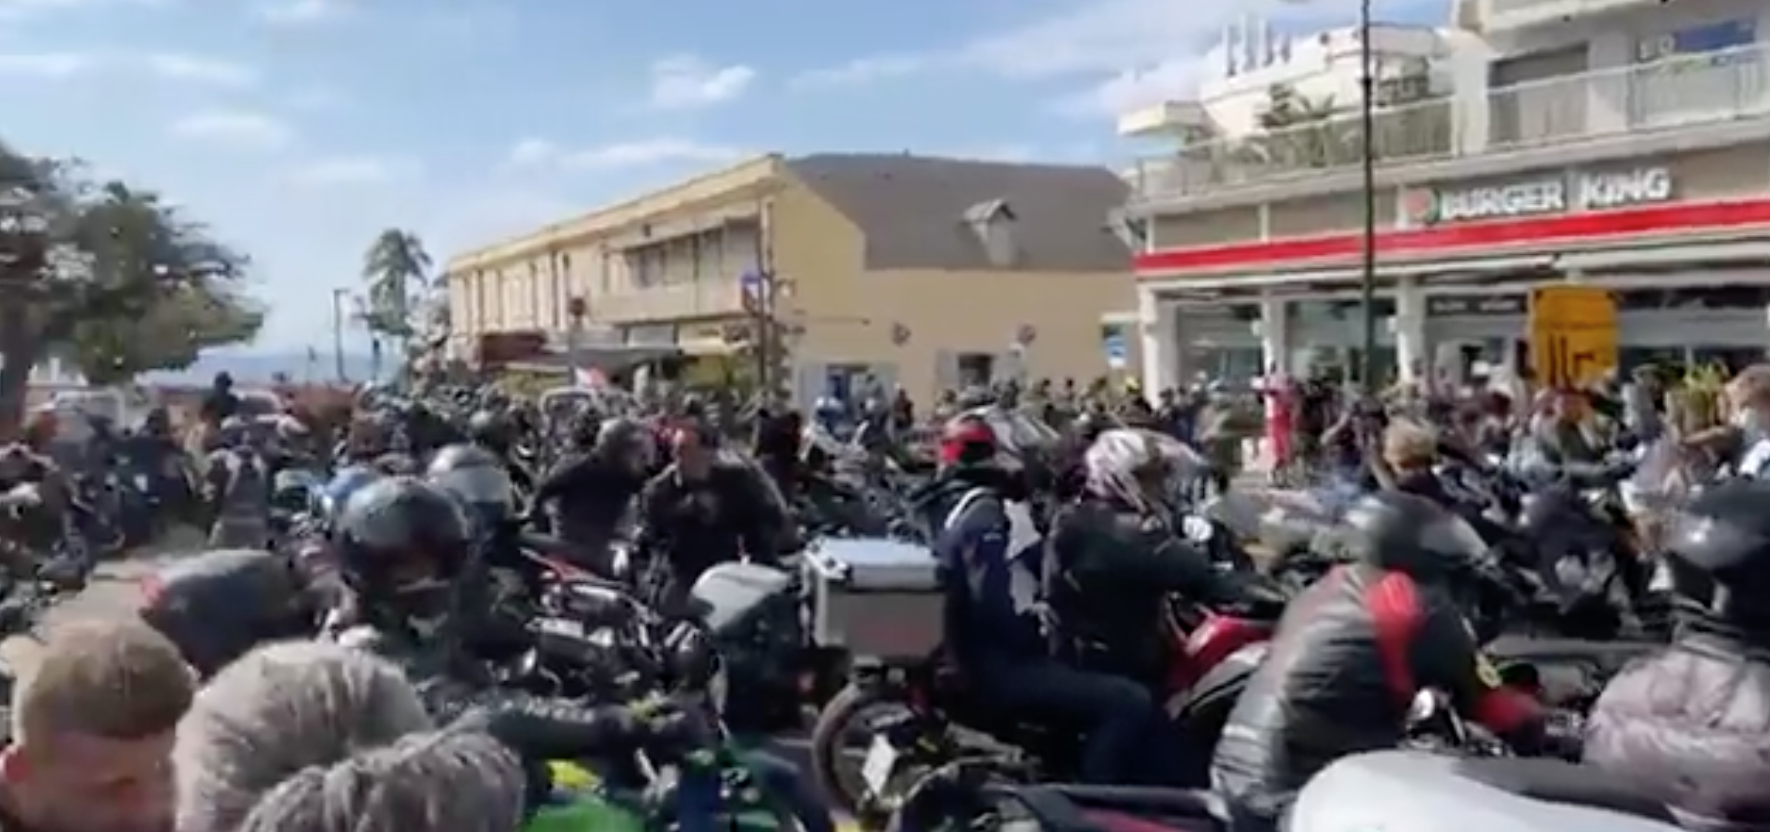 Manifestations anti-pass sanitaire : Des motards rejoignent le mouvement devant la préfecture 